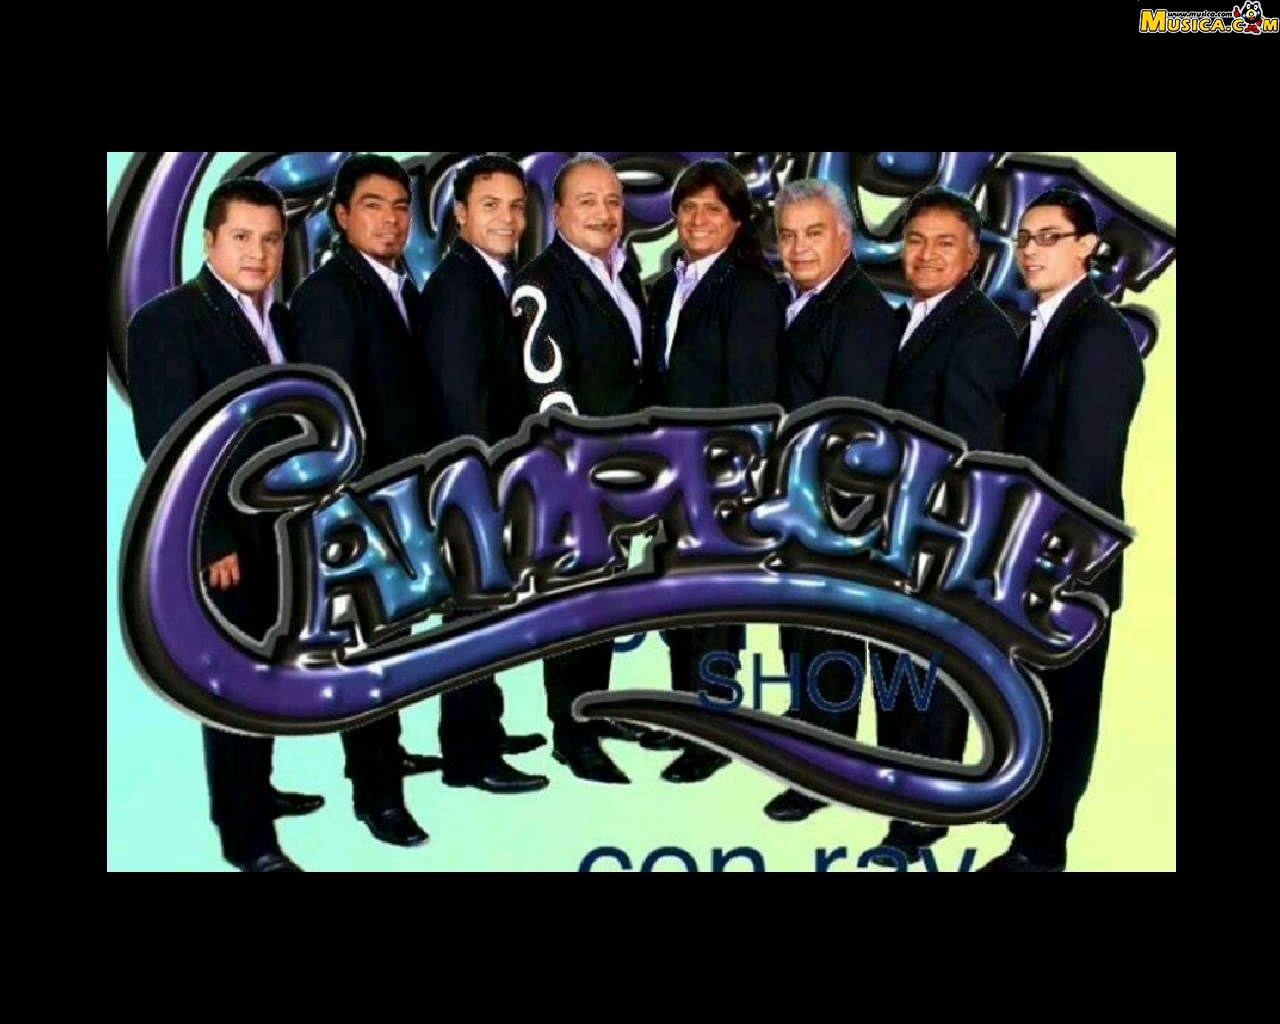 Fondo de pantalla de Campeche Show